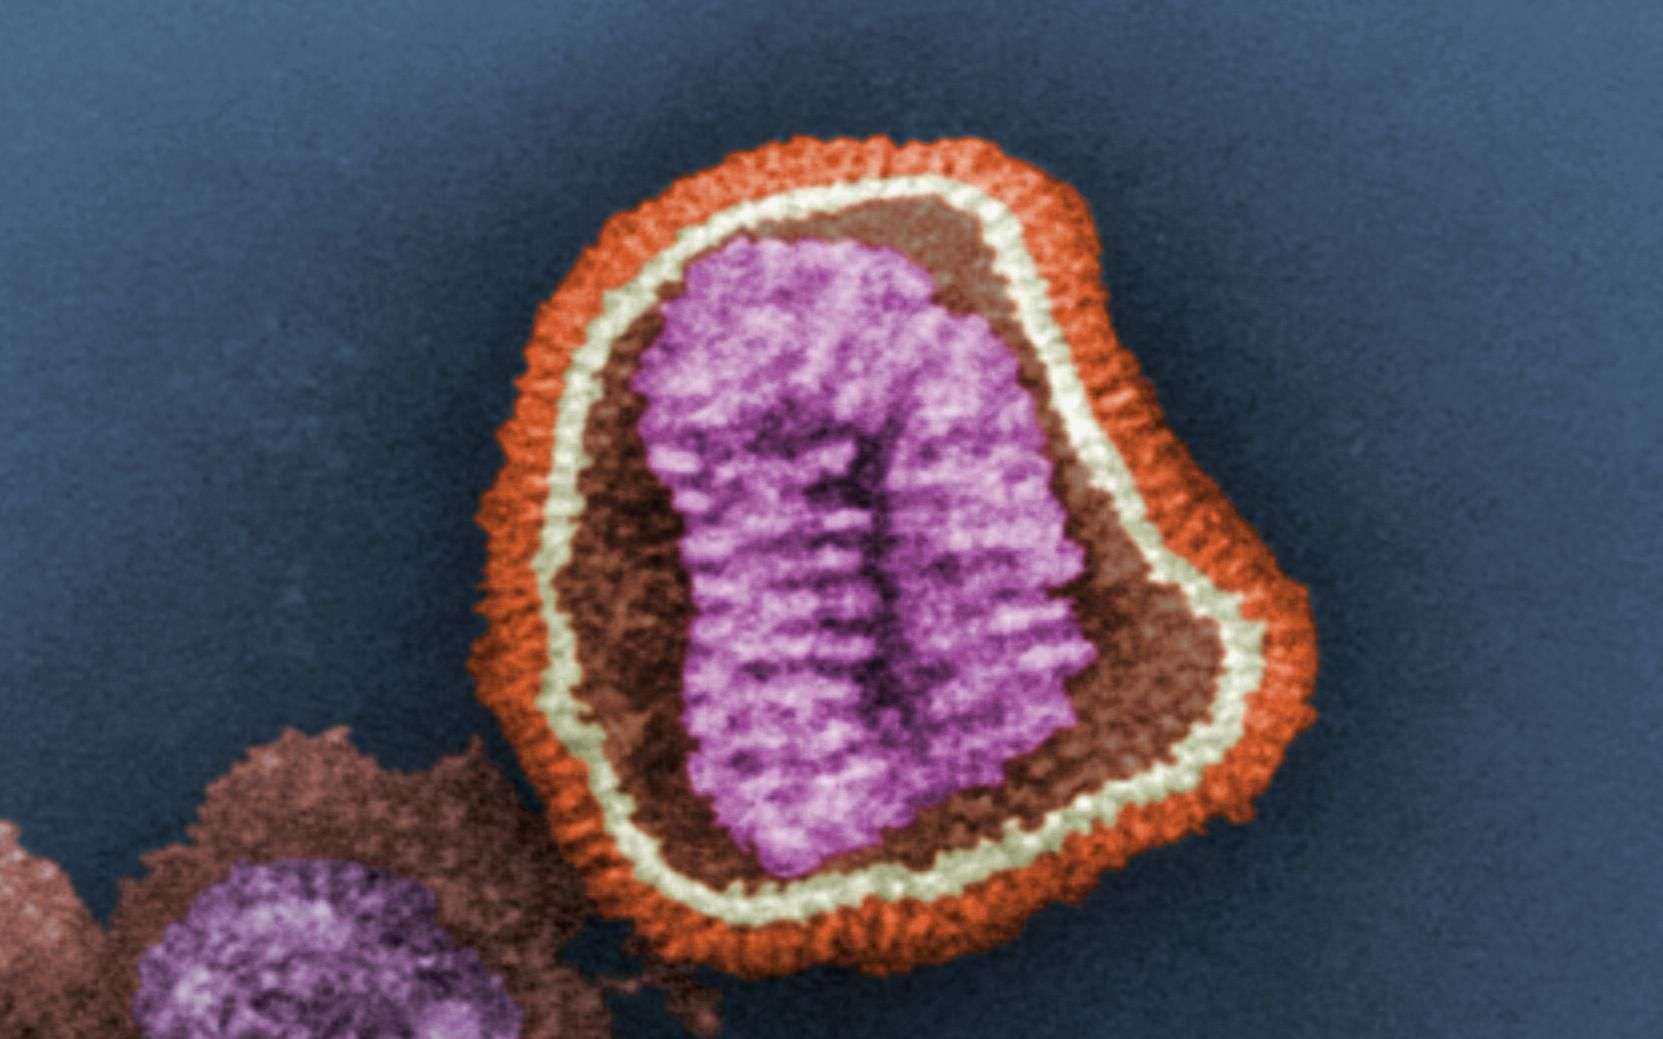 La grippe A(H7N9) causerait des symptômes particulièrement violents chez les adultes en bonne santé, tandis que les oiseaux ne montrent aucun signe de la maladie. © C. Goldsmith, CDC, DP